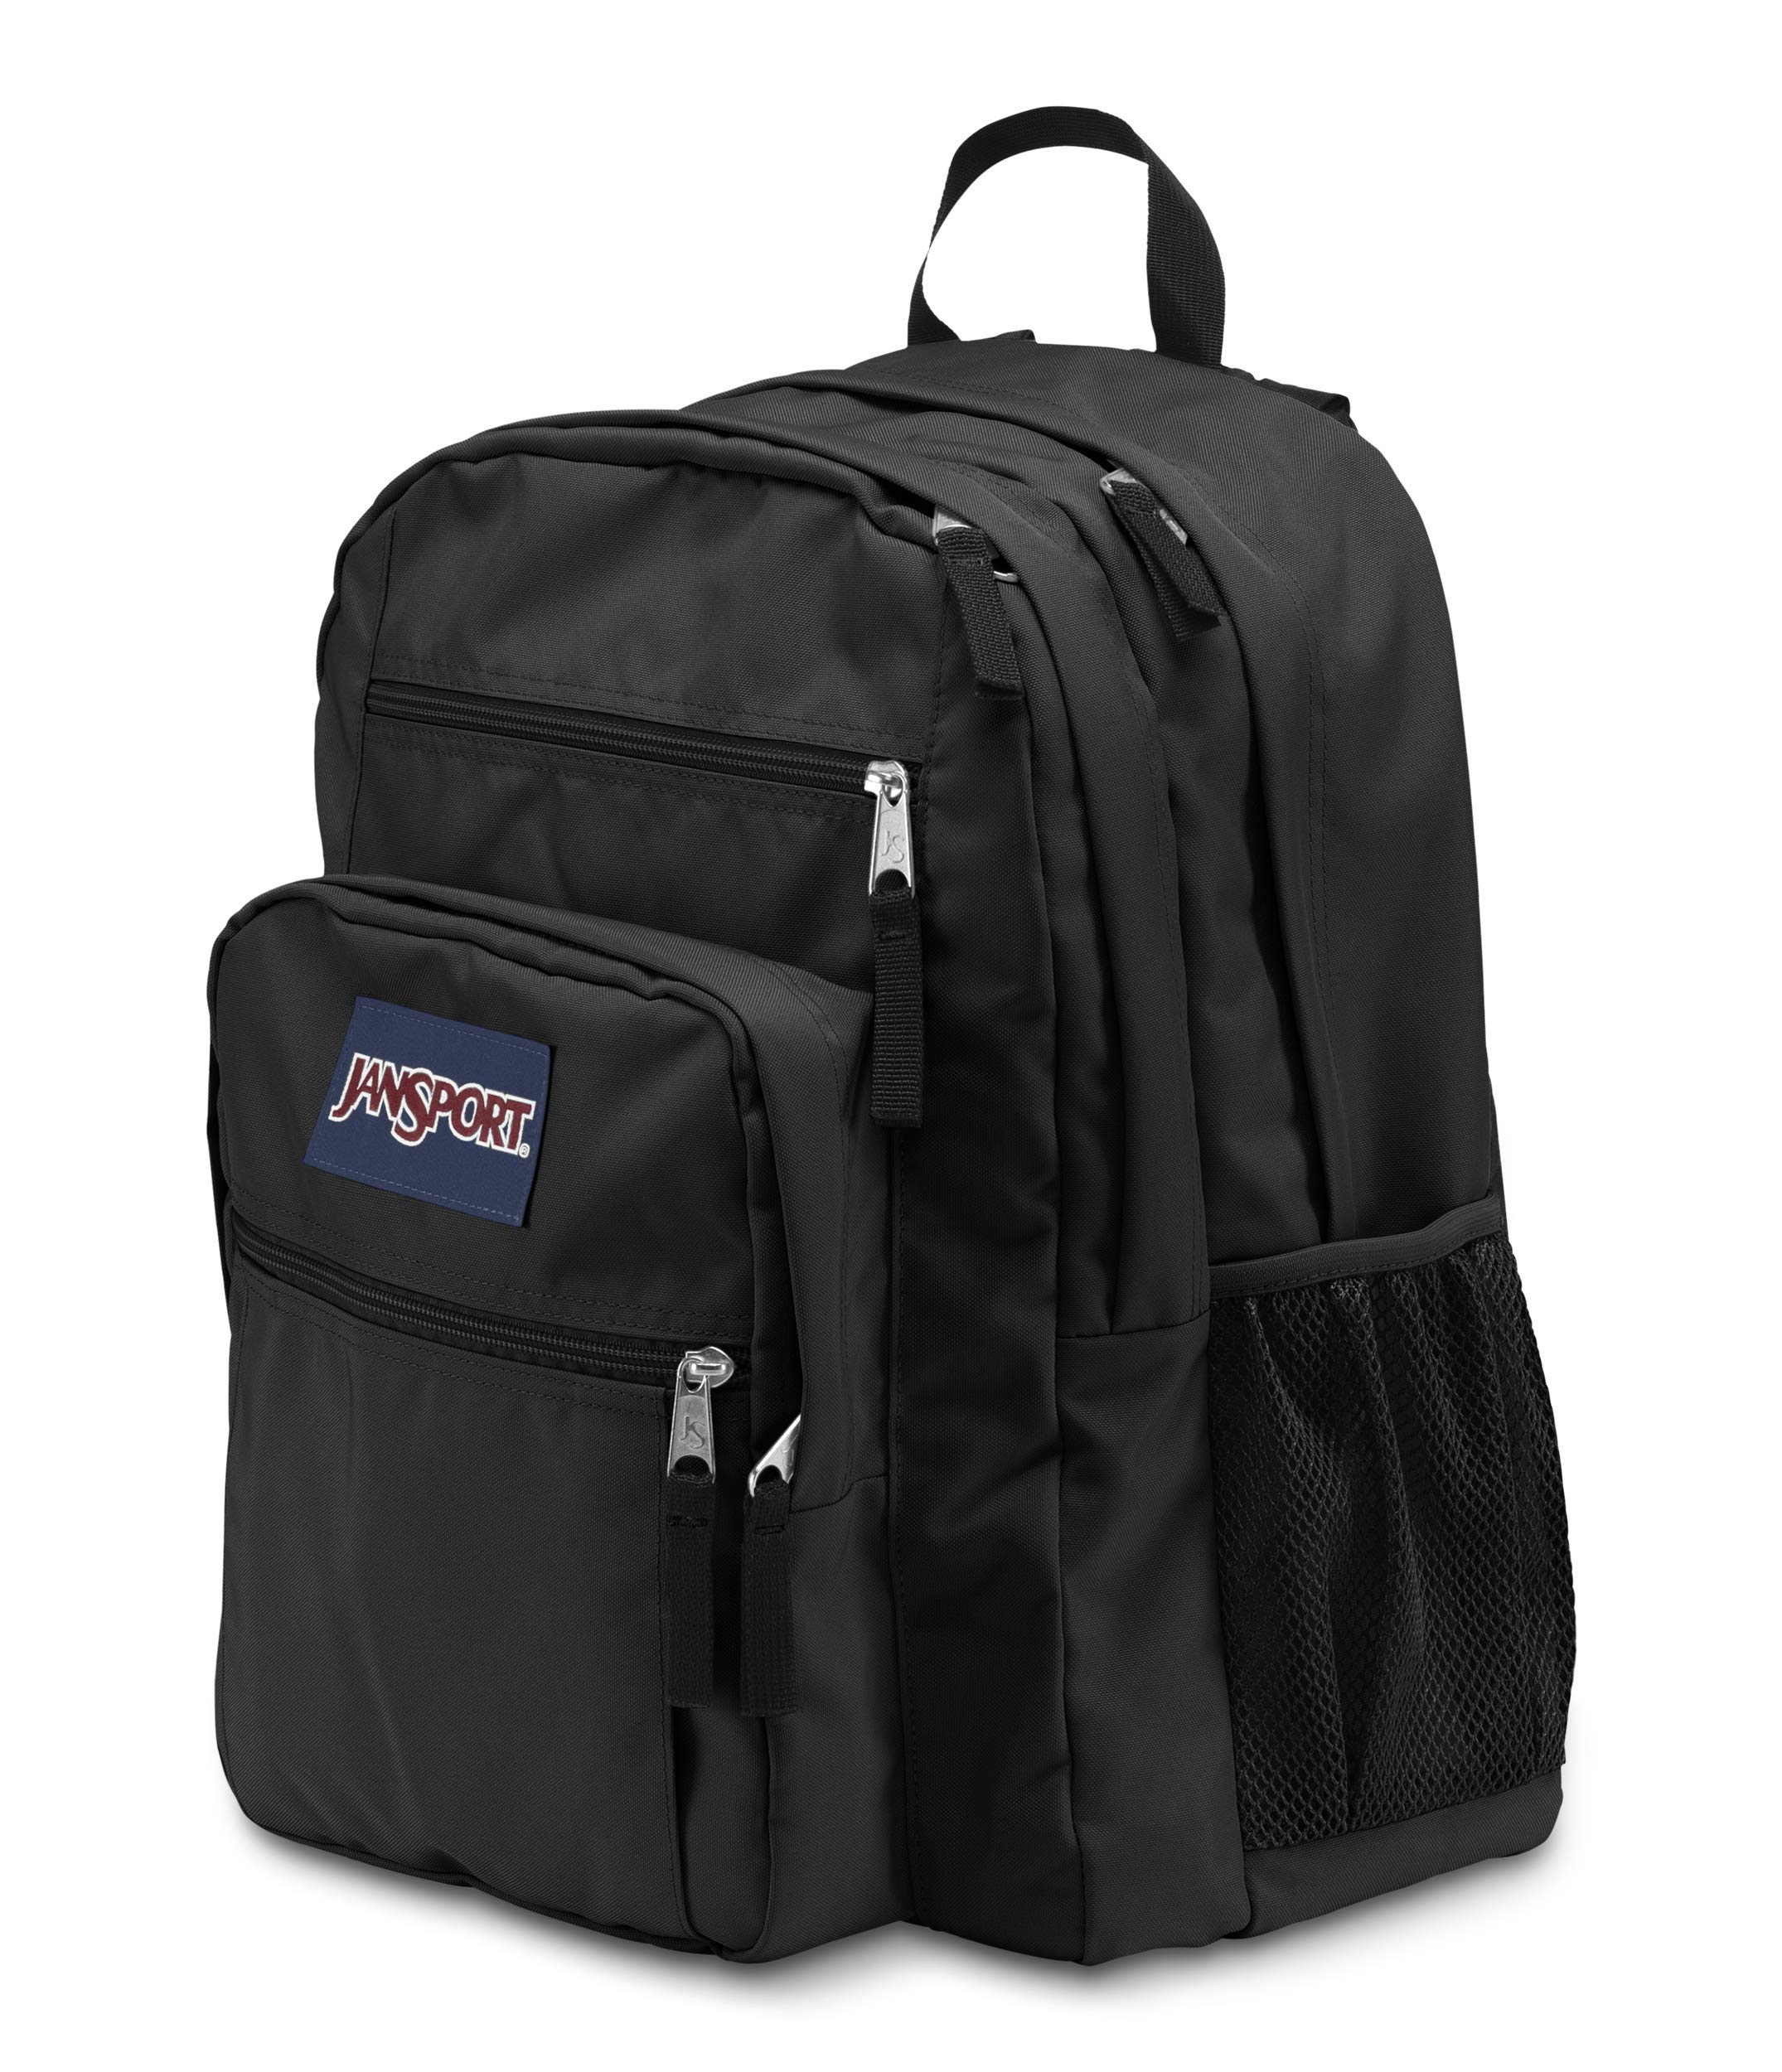 JanSport Big Laptop Backpack for College - Computer Bag with 2 Compartments, Ergonomic Shoulder Straps, 15” Laptop Sleeve, Haul Handle - Book Rucksack, Black